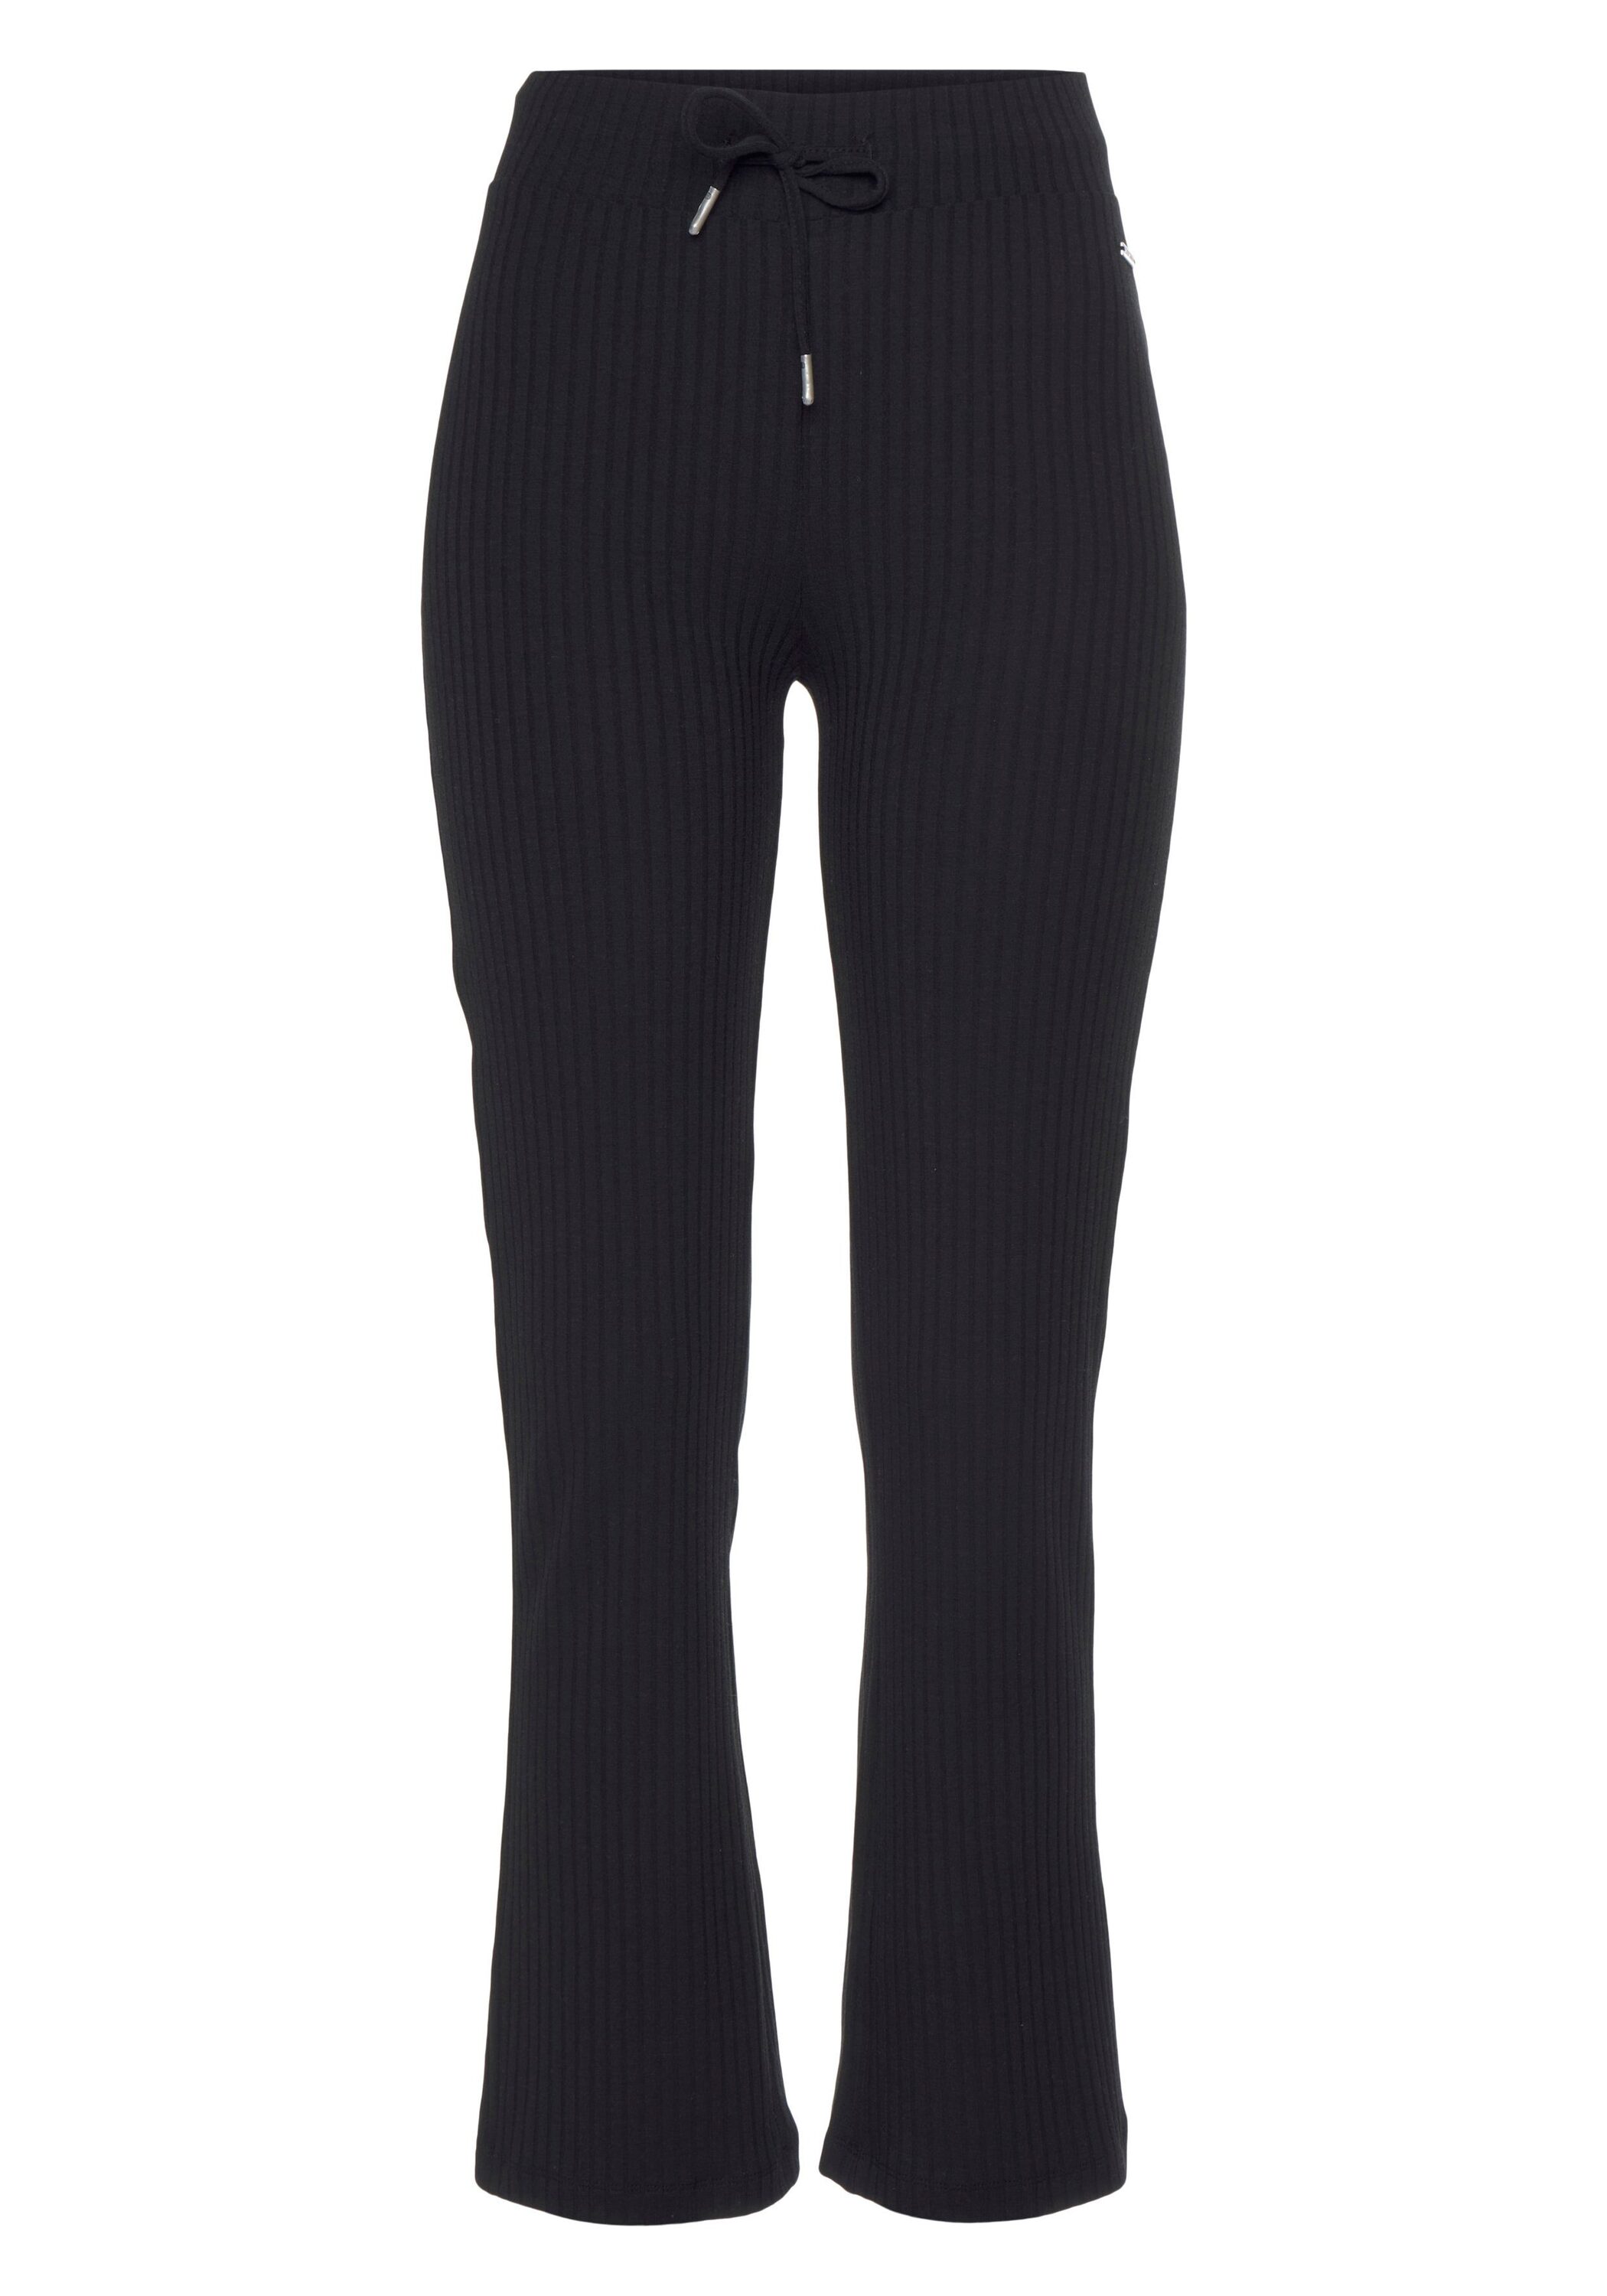 Спортивные брюки Vivance Homewear, цвет schwarz, schwarz